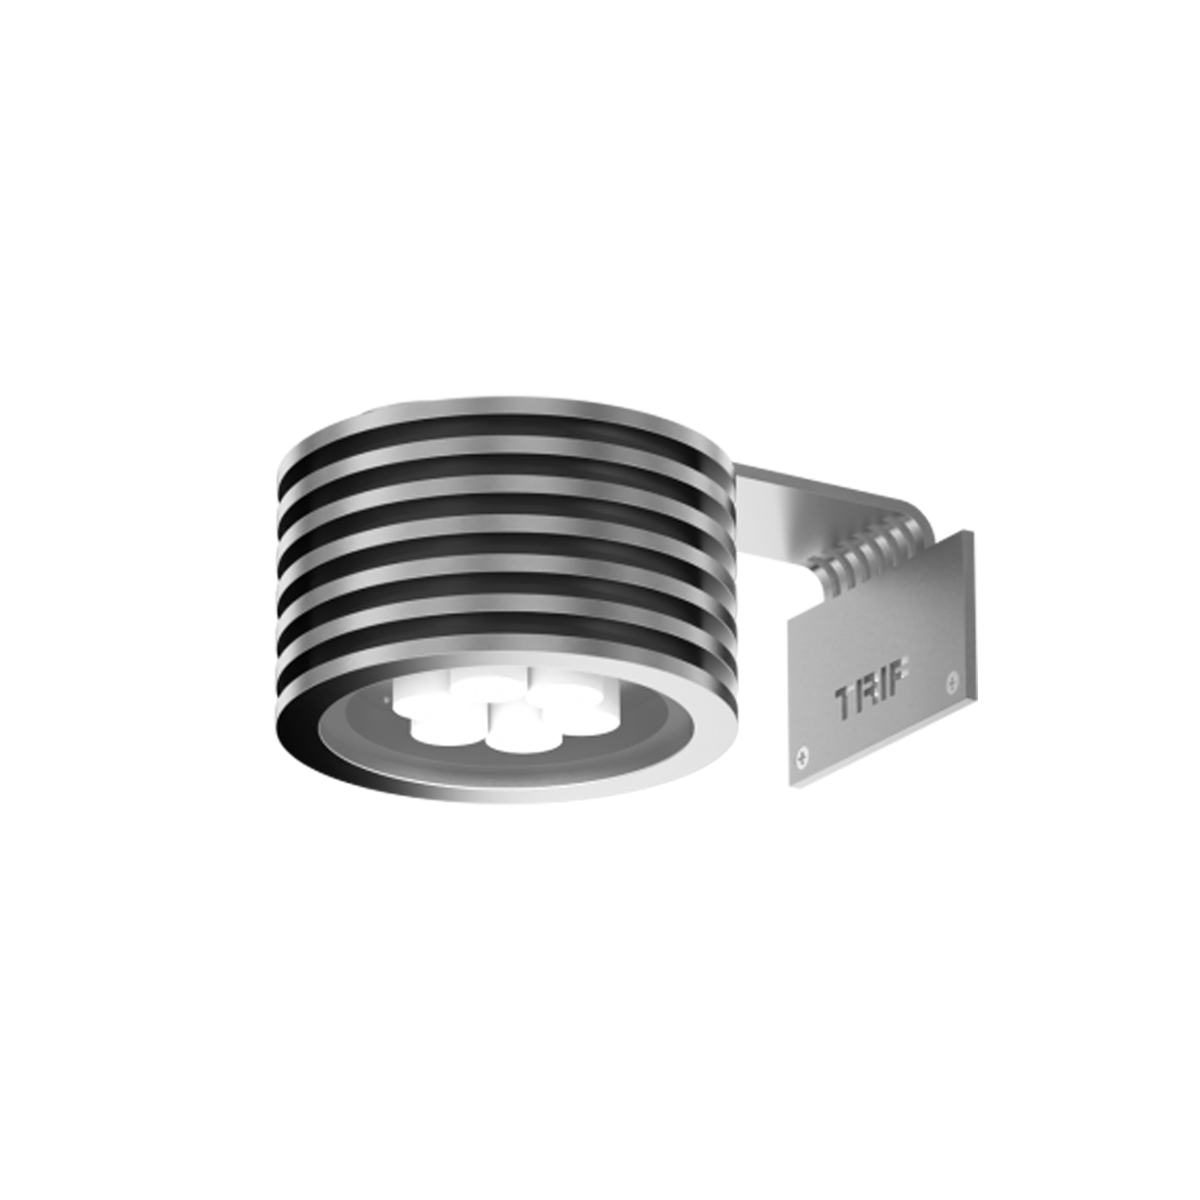 TRIF JUPITER WALL - серия фасадных светодиодных прожекторов разной мощности